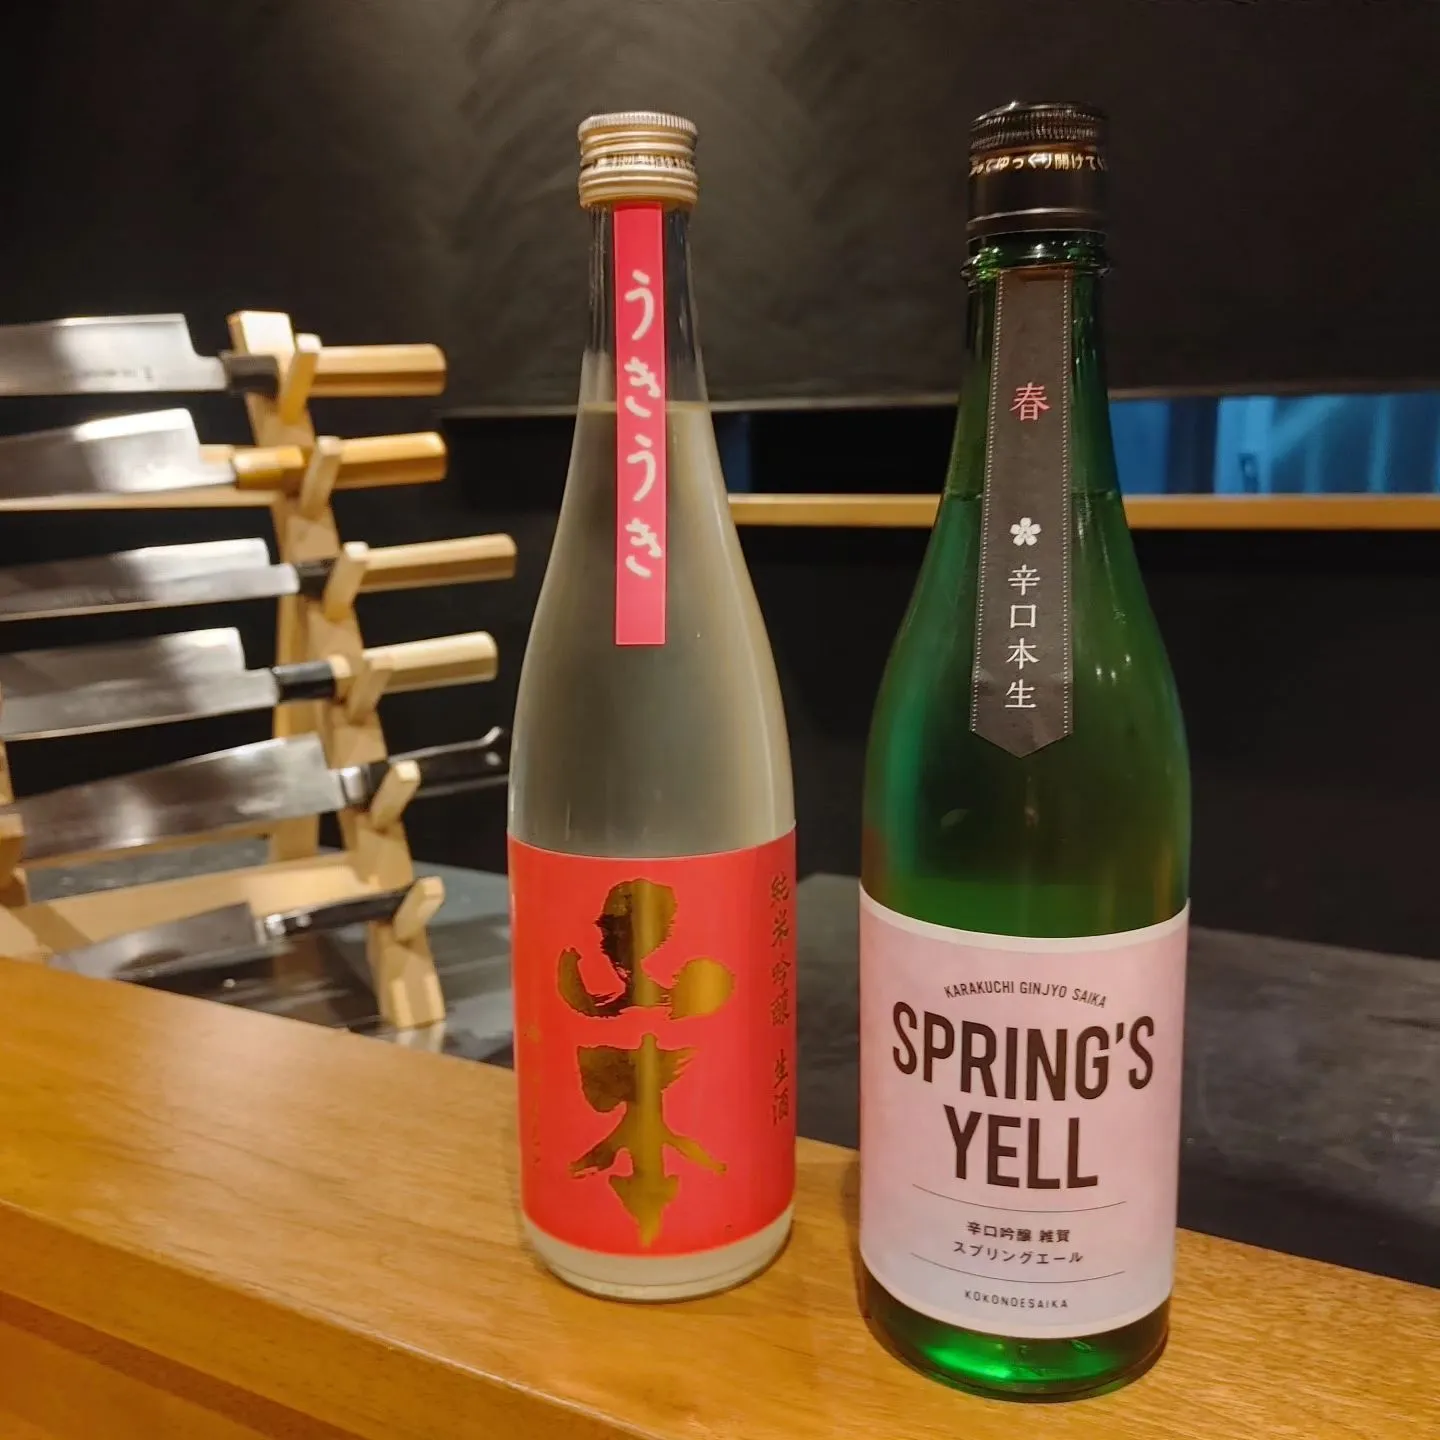 日本酒の種類は常時15品目以上置いております‼️